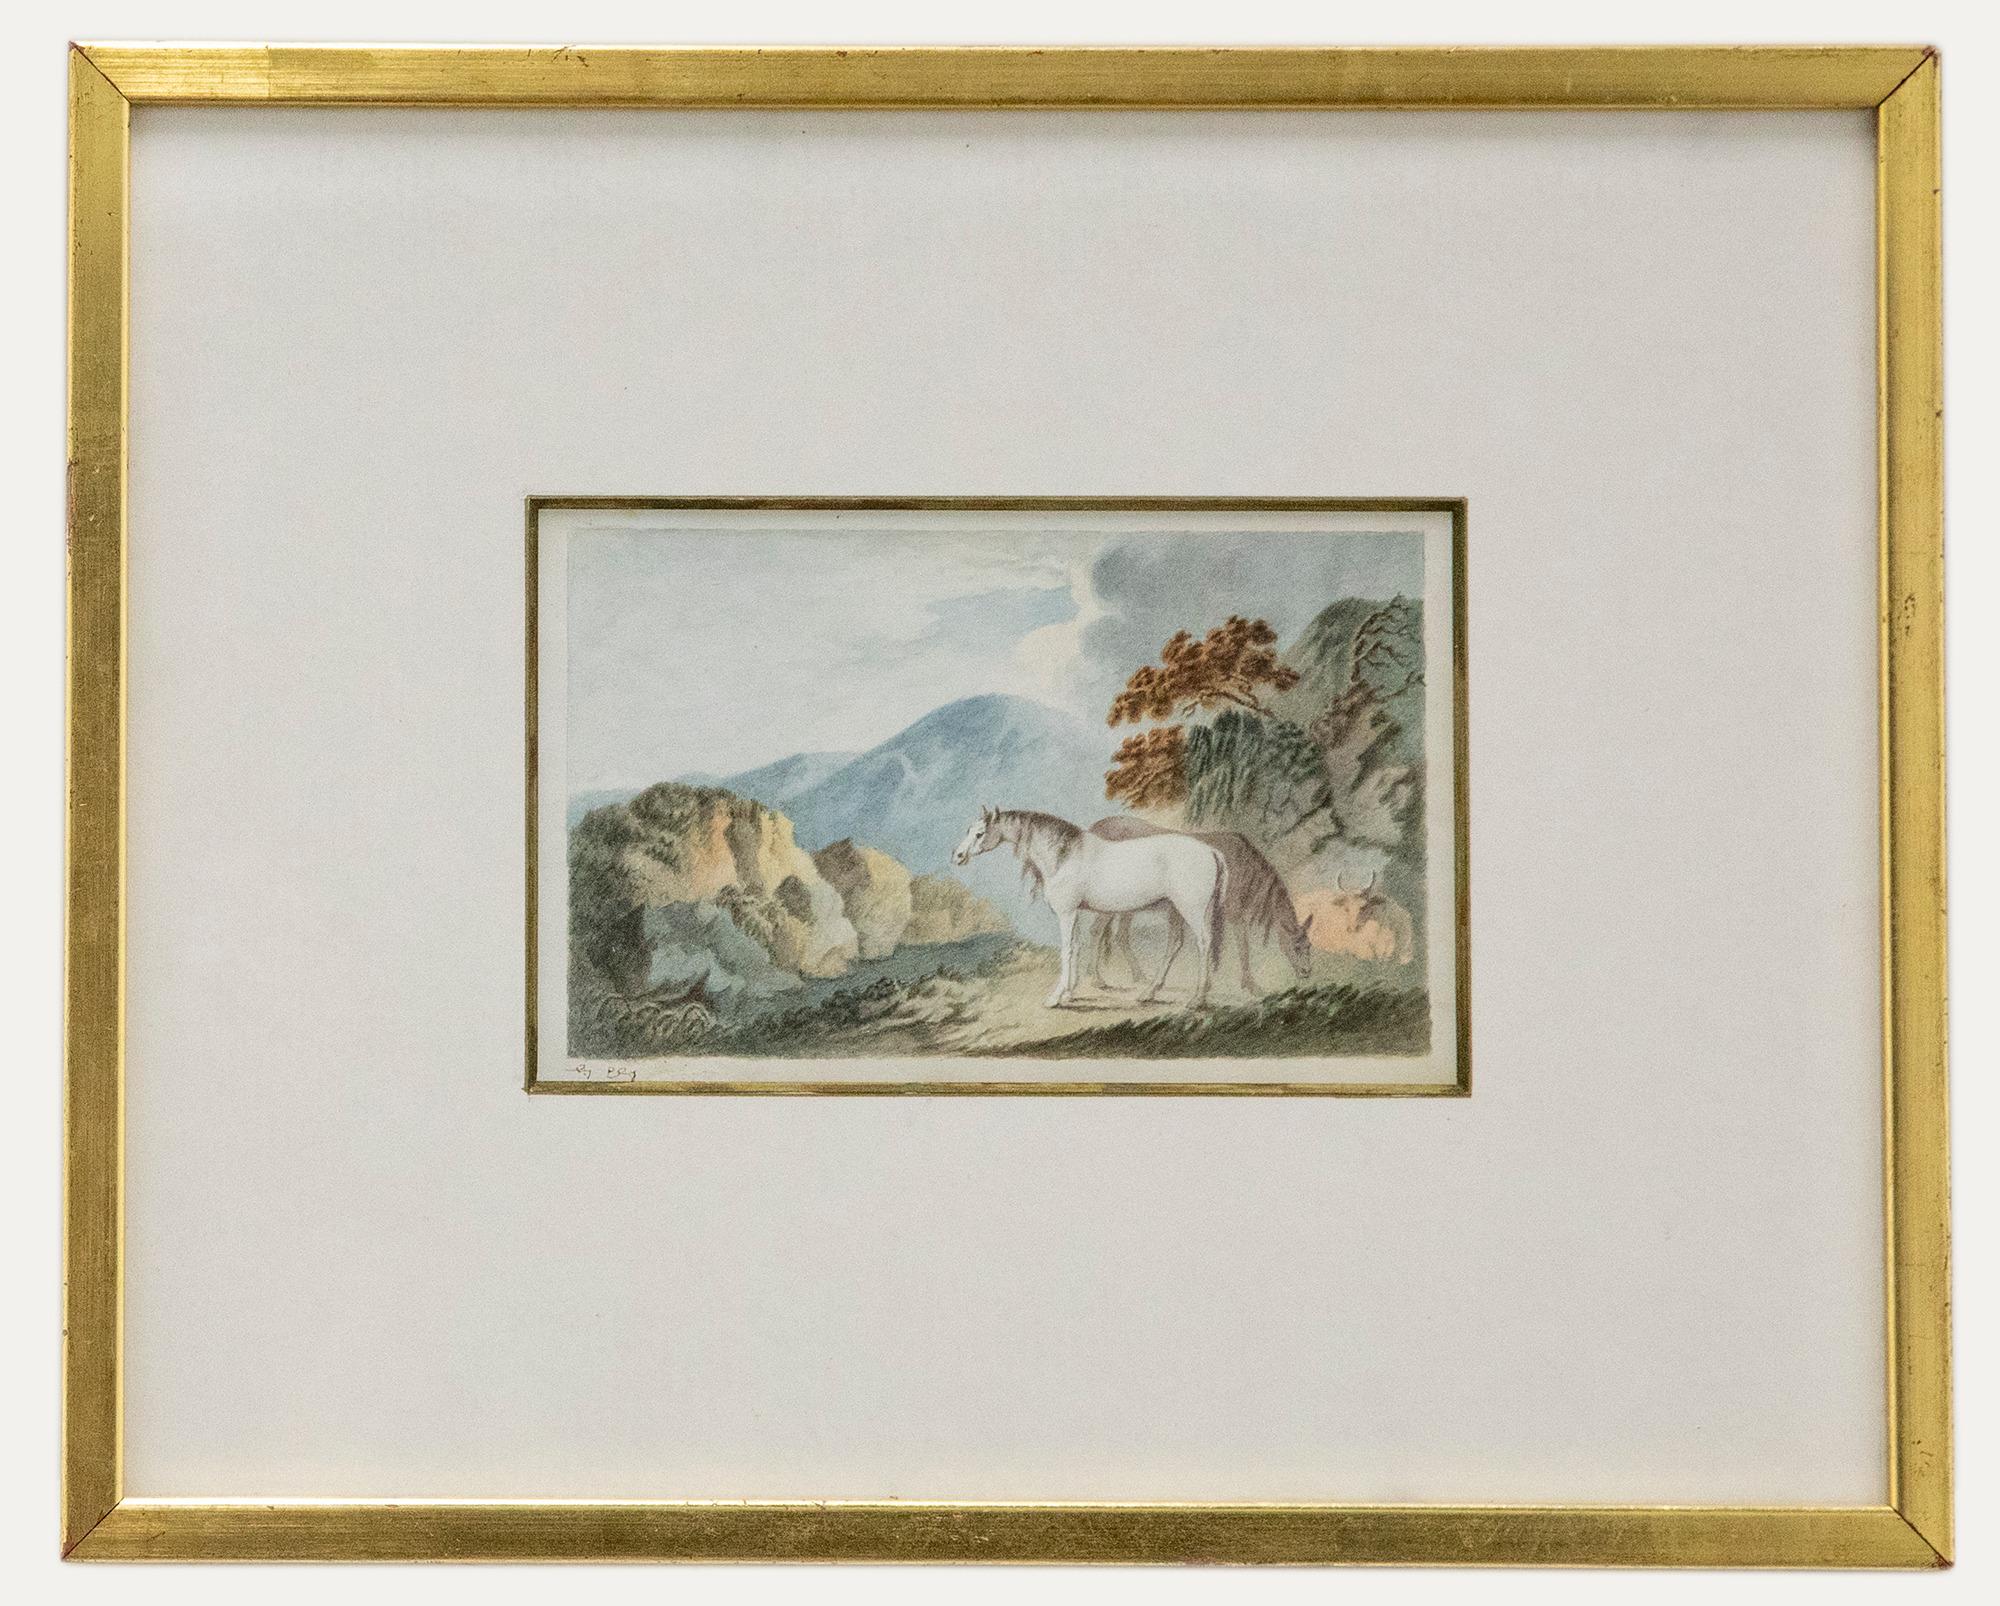 Unknown Landscape Art – George Ely  - Frühes Aquarell aus dem 19. Jahrhundert, Grau in den Bergen